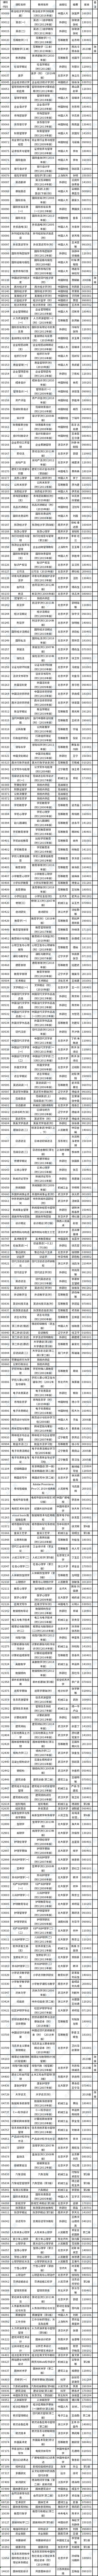 浙江省2023年10月高等教育自学考试用书目录